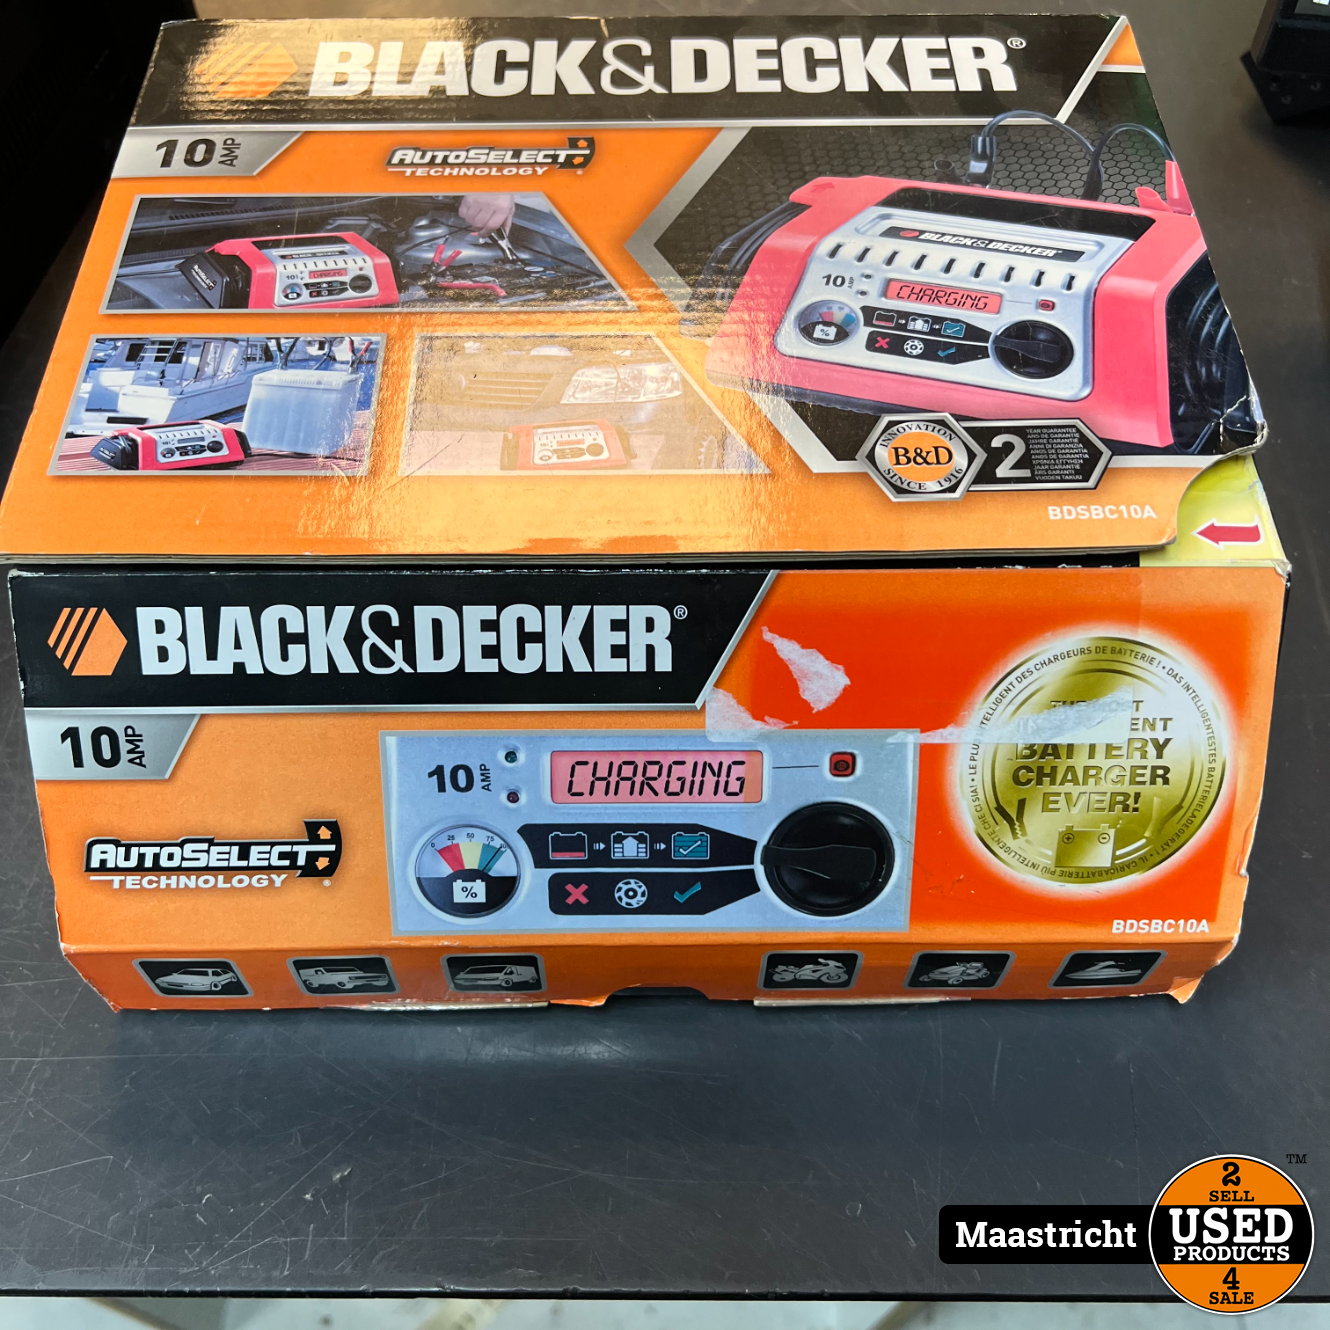 Getalenteerd Productie knelpunt Black &amp; Decker BDSBC10A-QS Acculader , nieuw in doos - Used Products  Maastricht